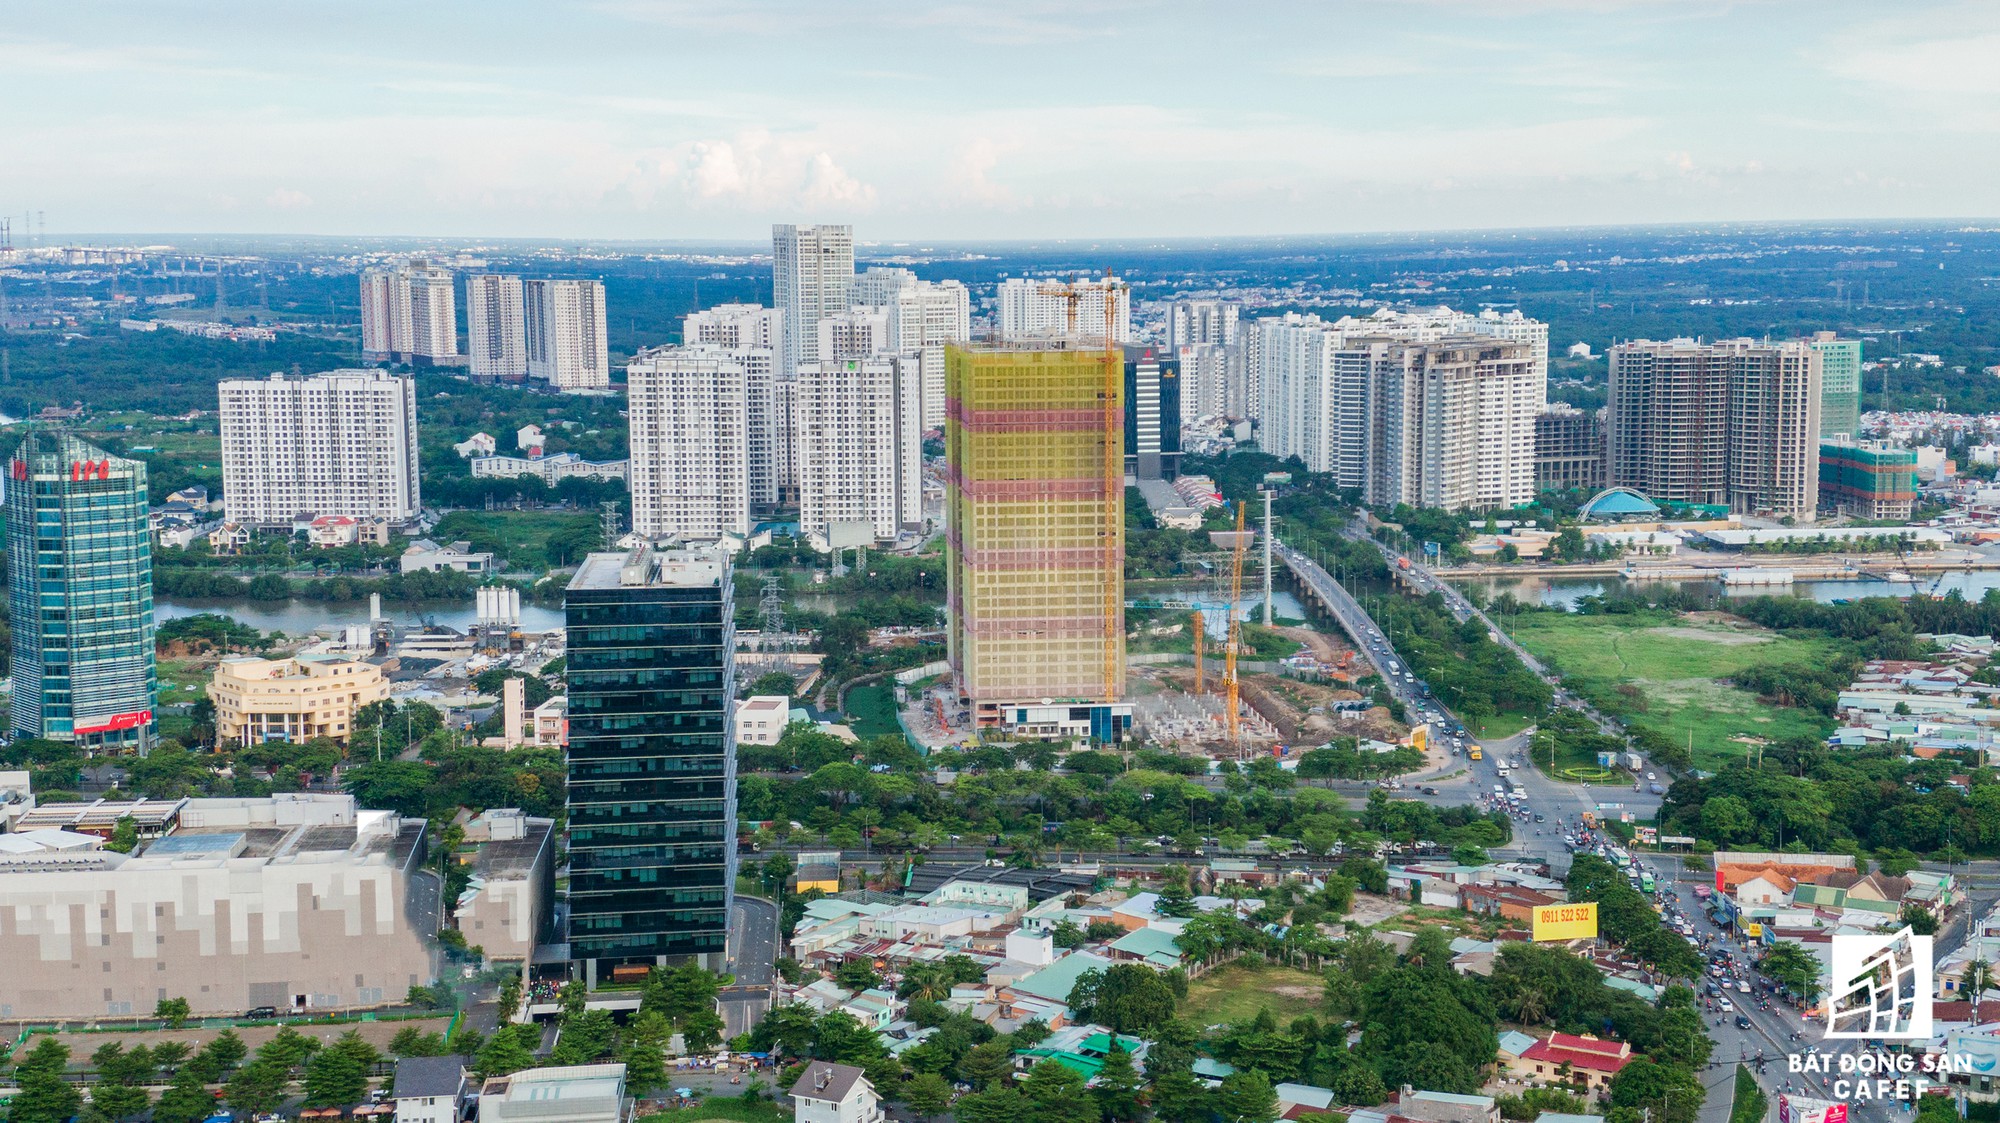 Toàn cảnh đại lộ tỷ đô đã tạo nên một thị trường bất động sản rất riêng cho khu Nam Sài Gòn - Ảnh 21.